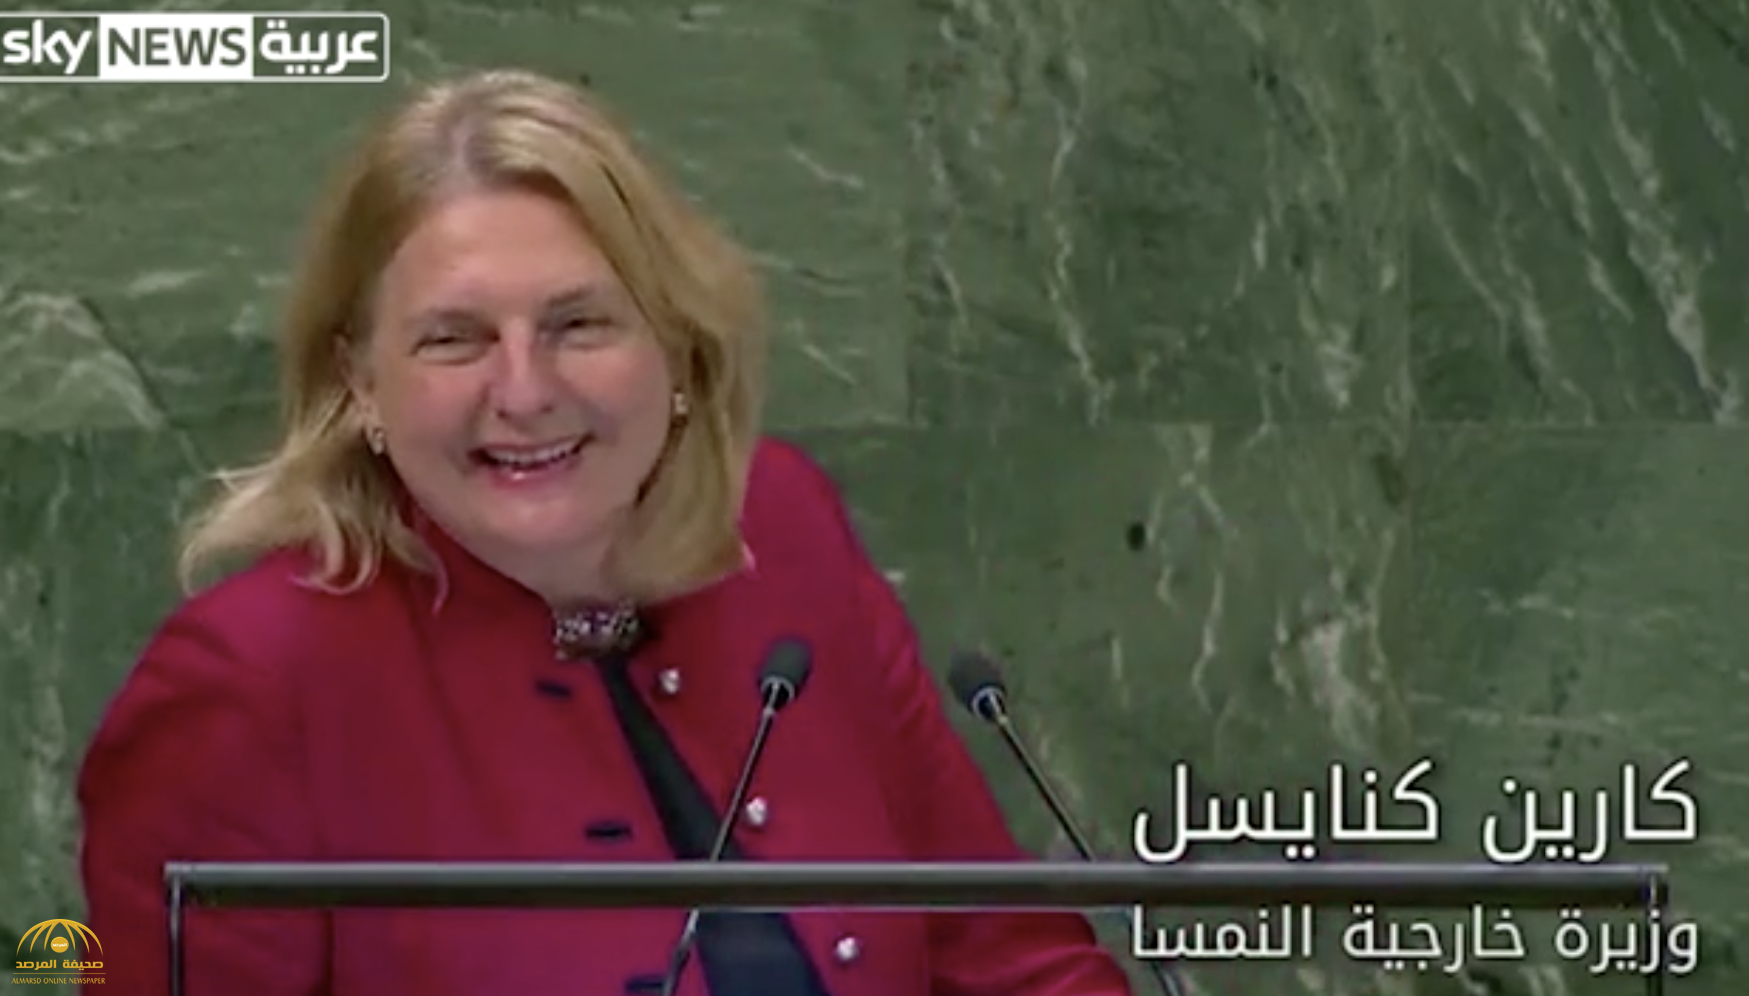 لأول مرة ... شاهد: وزيرة خارجية "النمسا" تلقي كلمتها أمام الجمعية العامة بالعربية!